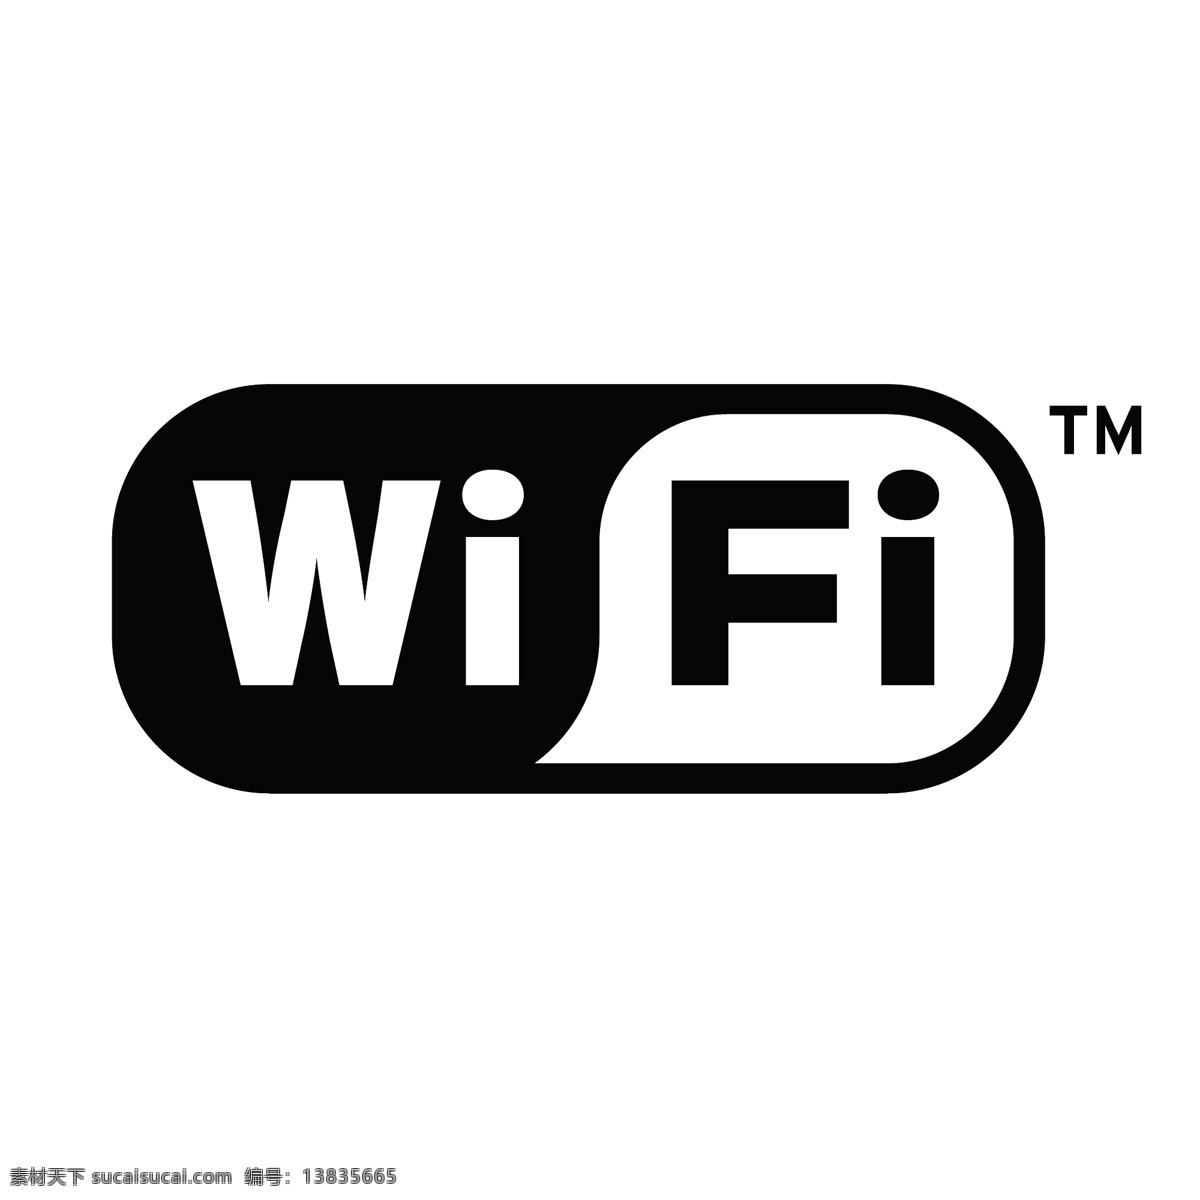 无线 wifi 无线网 wi fi logo 无线网络标志 标识标志图标 公共标识标志 矢量图库